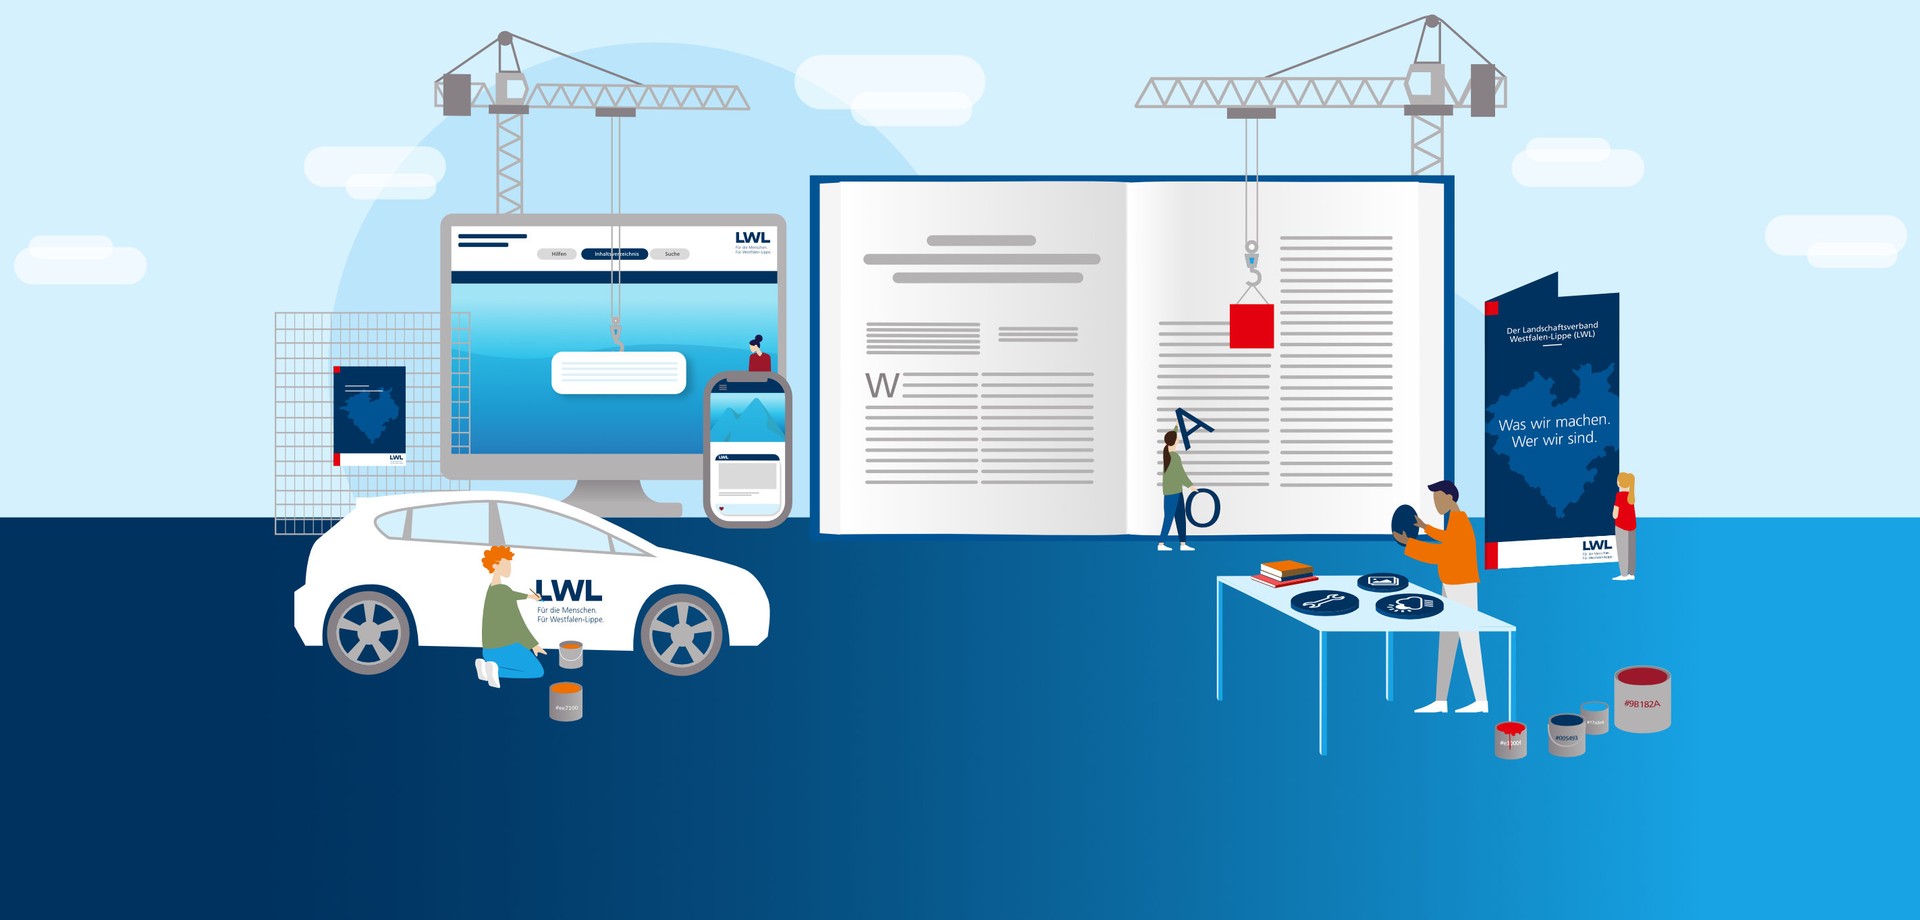 Grafik mit verschiedenen Elementen des LWL-Corporate Design, z.B. Autobeschriftung, Broschüre und digitale Medien. Sie zeigt symbolhaft eine Baustelle